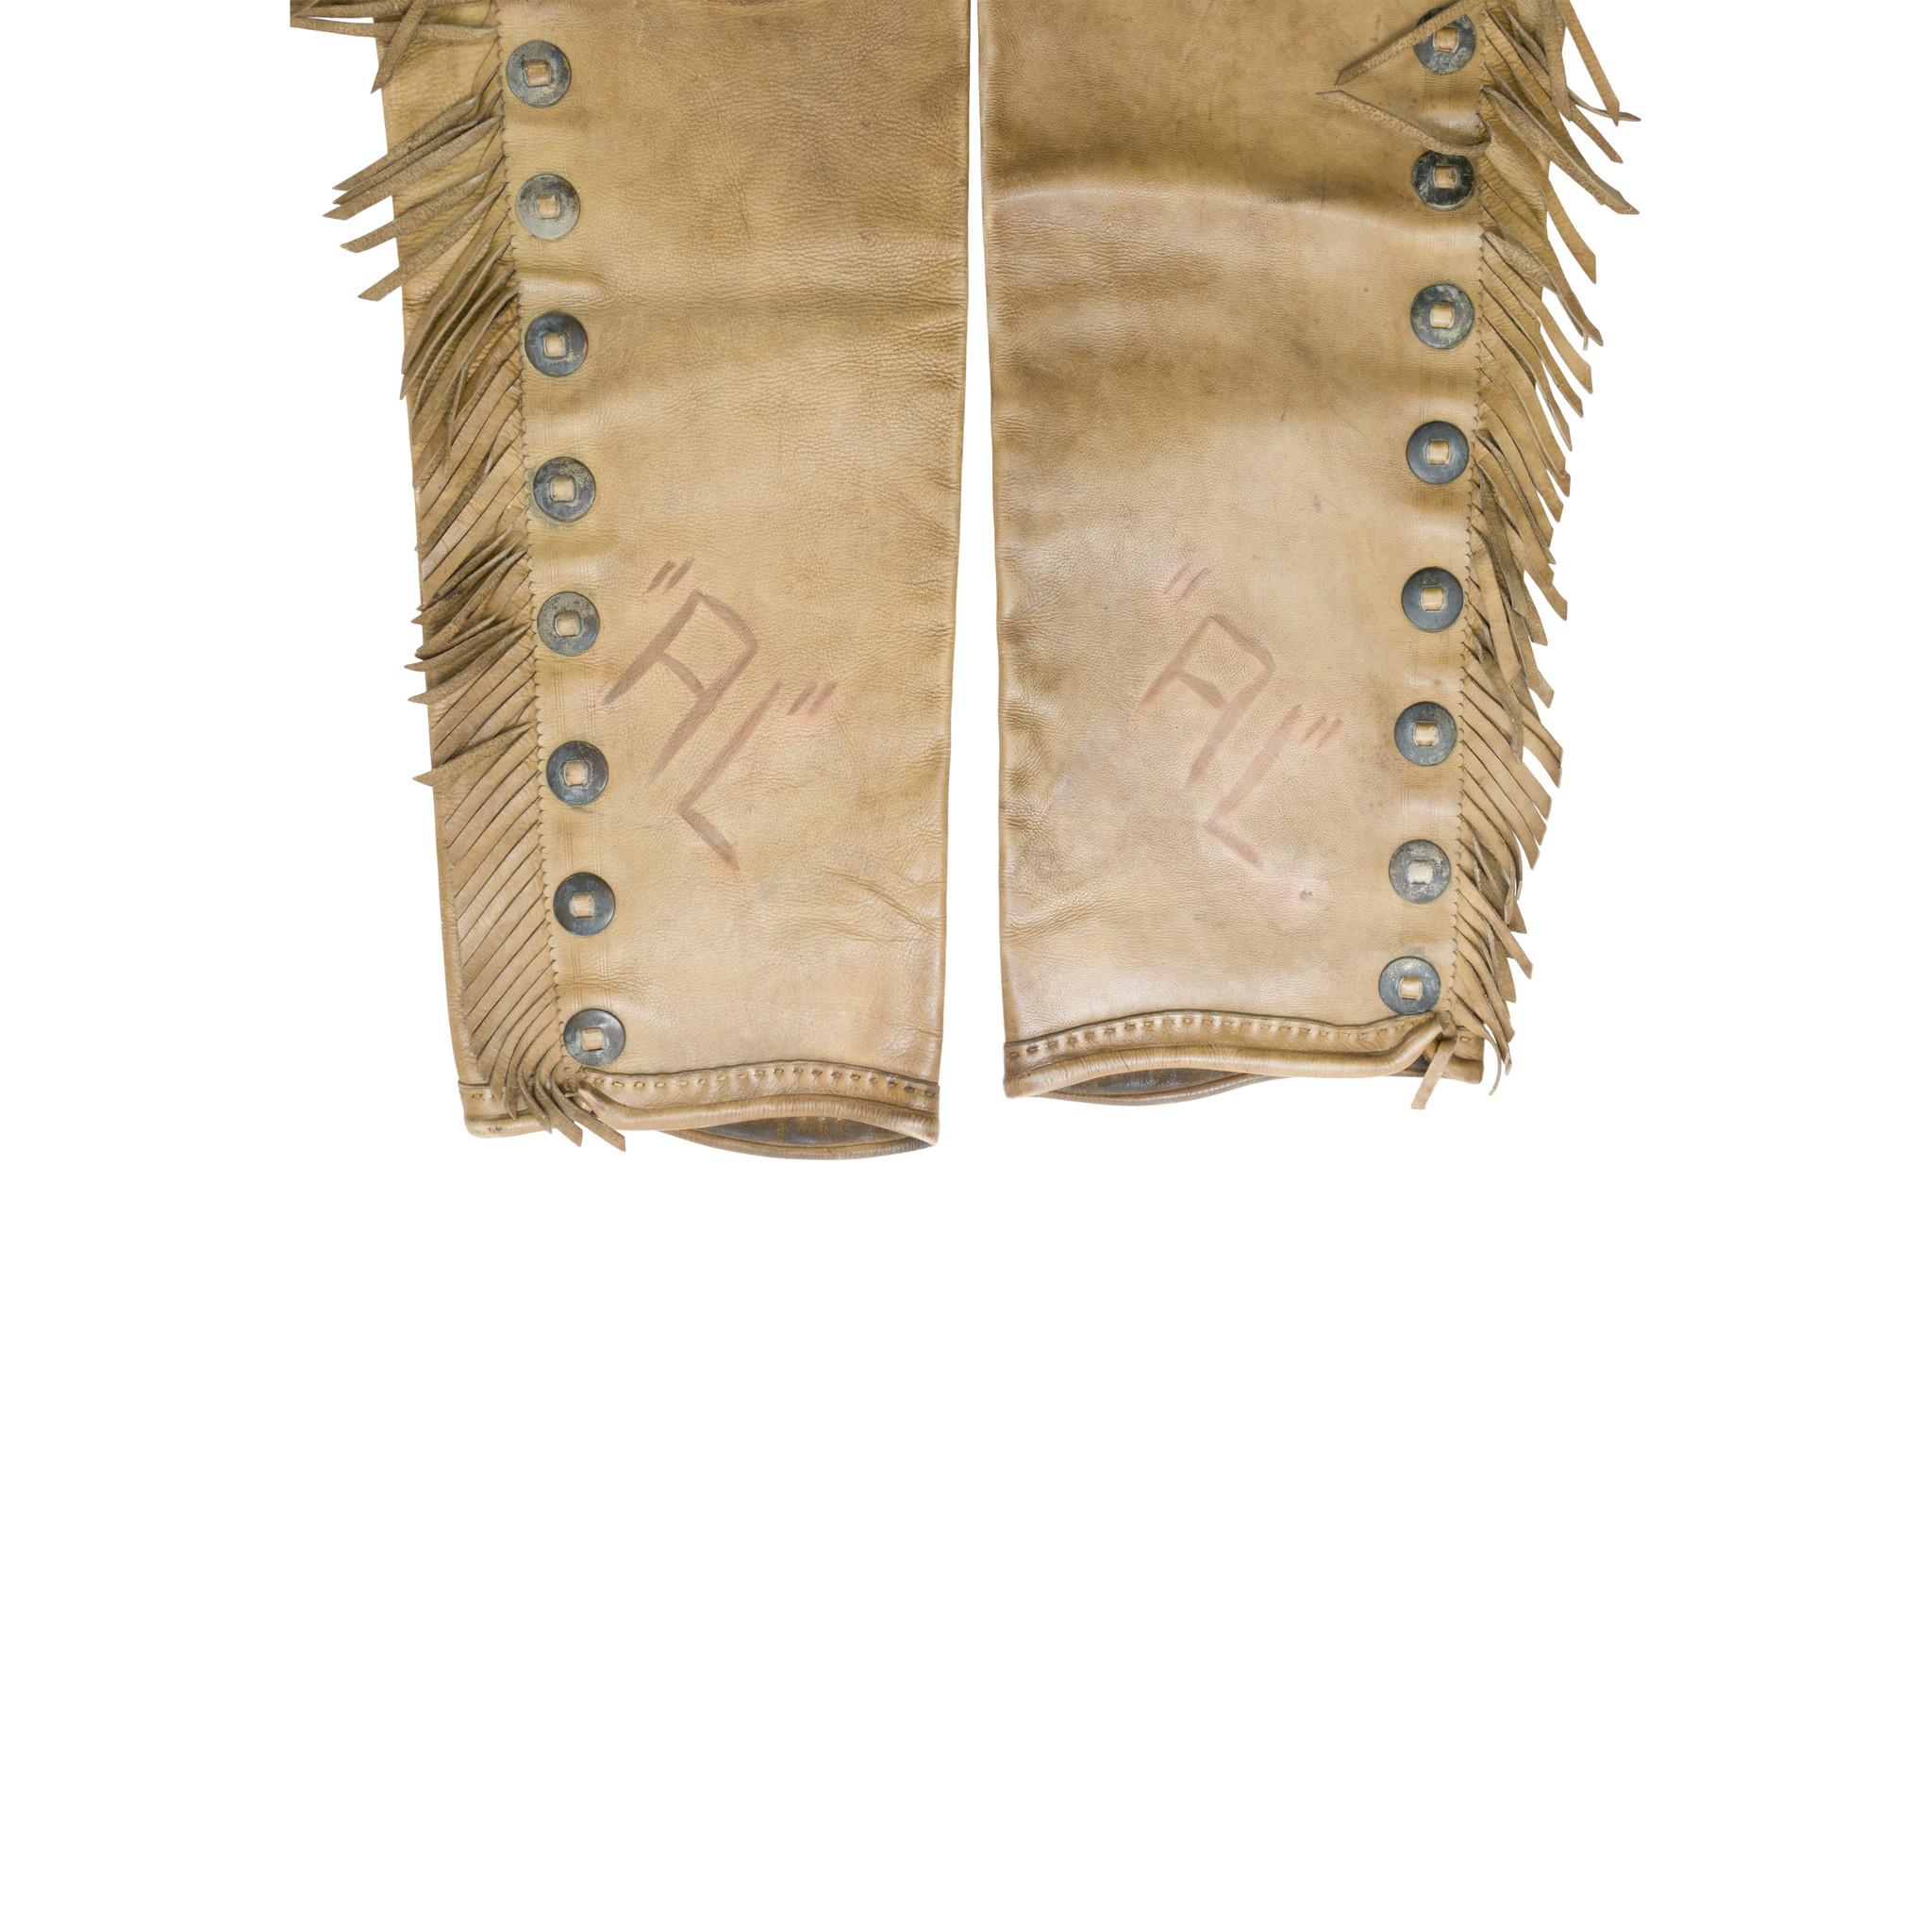 Cuir vintage R.T. Chaps Frazier avec poches extérieures cousues, franges et conchos. Supposez les initiales du propriétaire ou la marque 